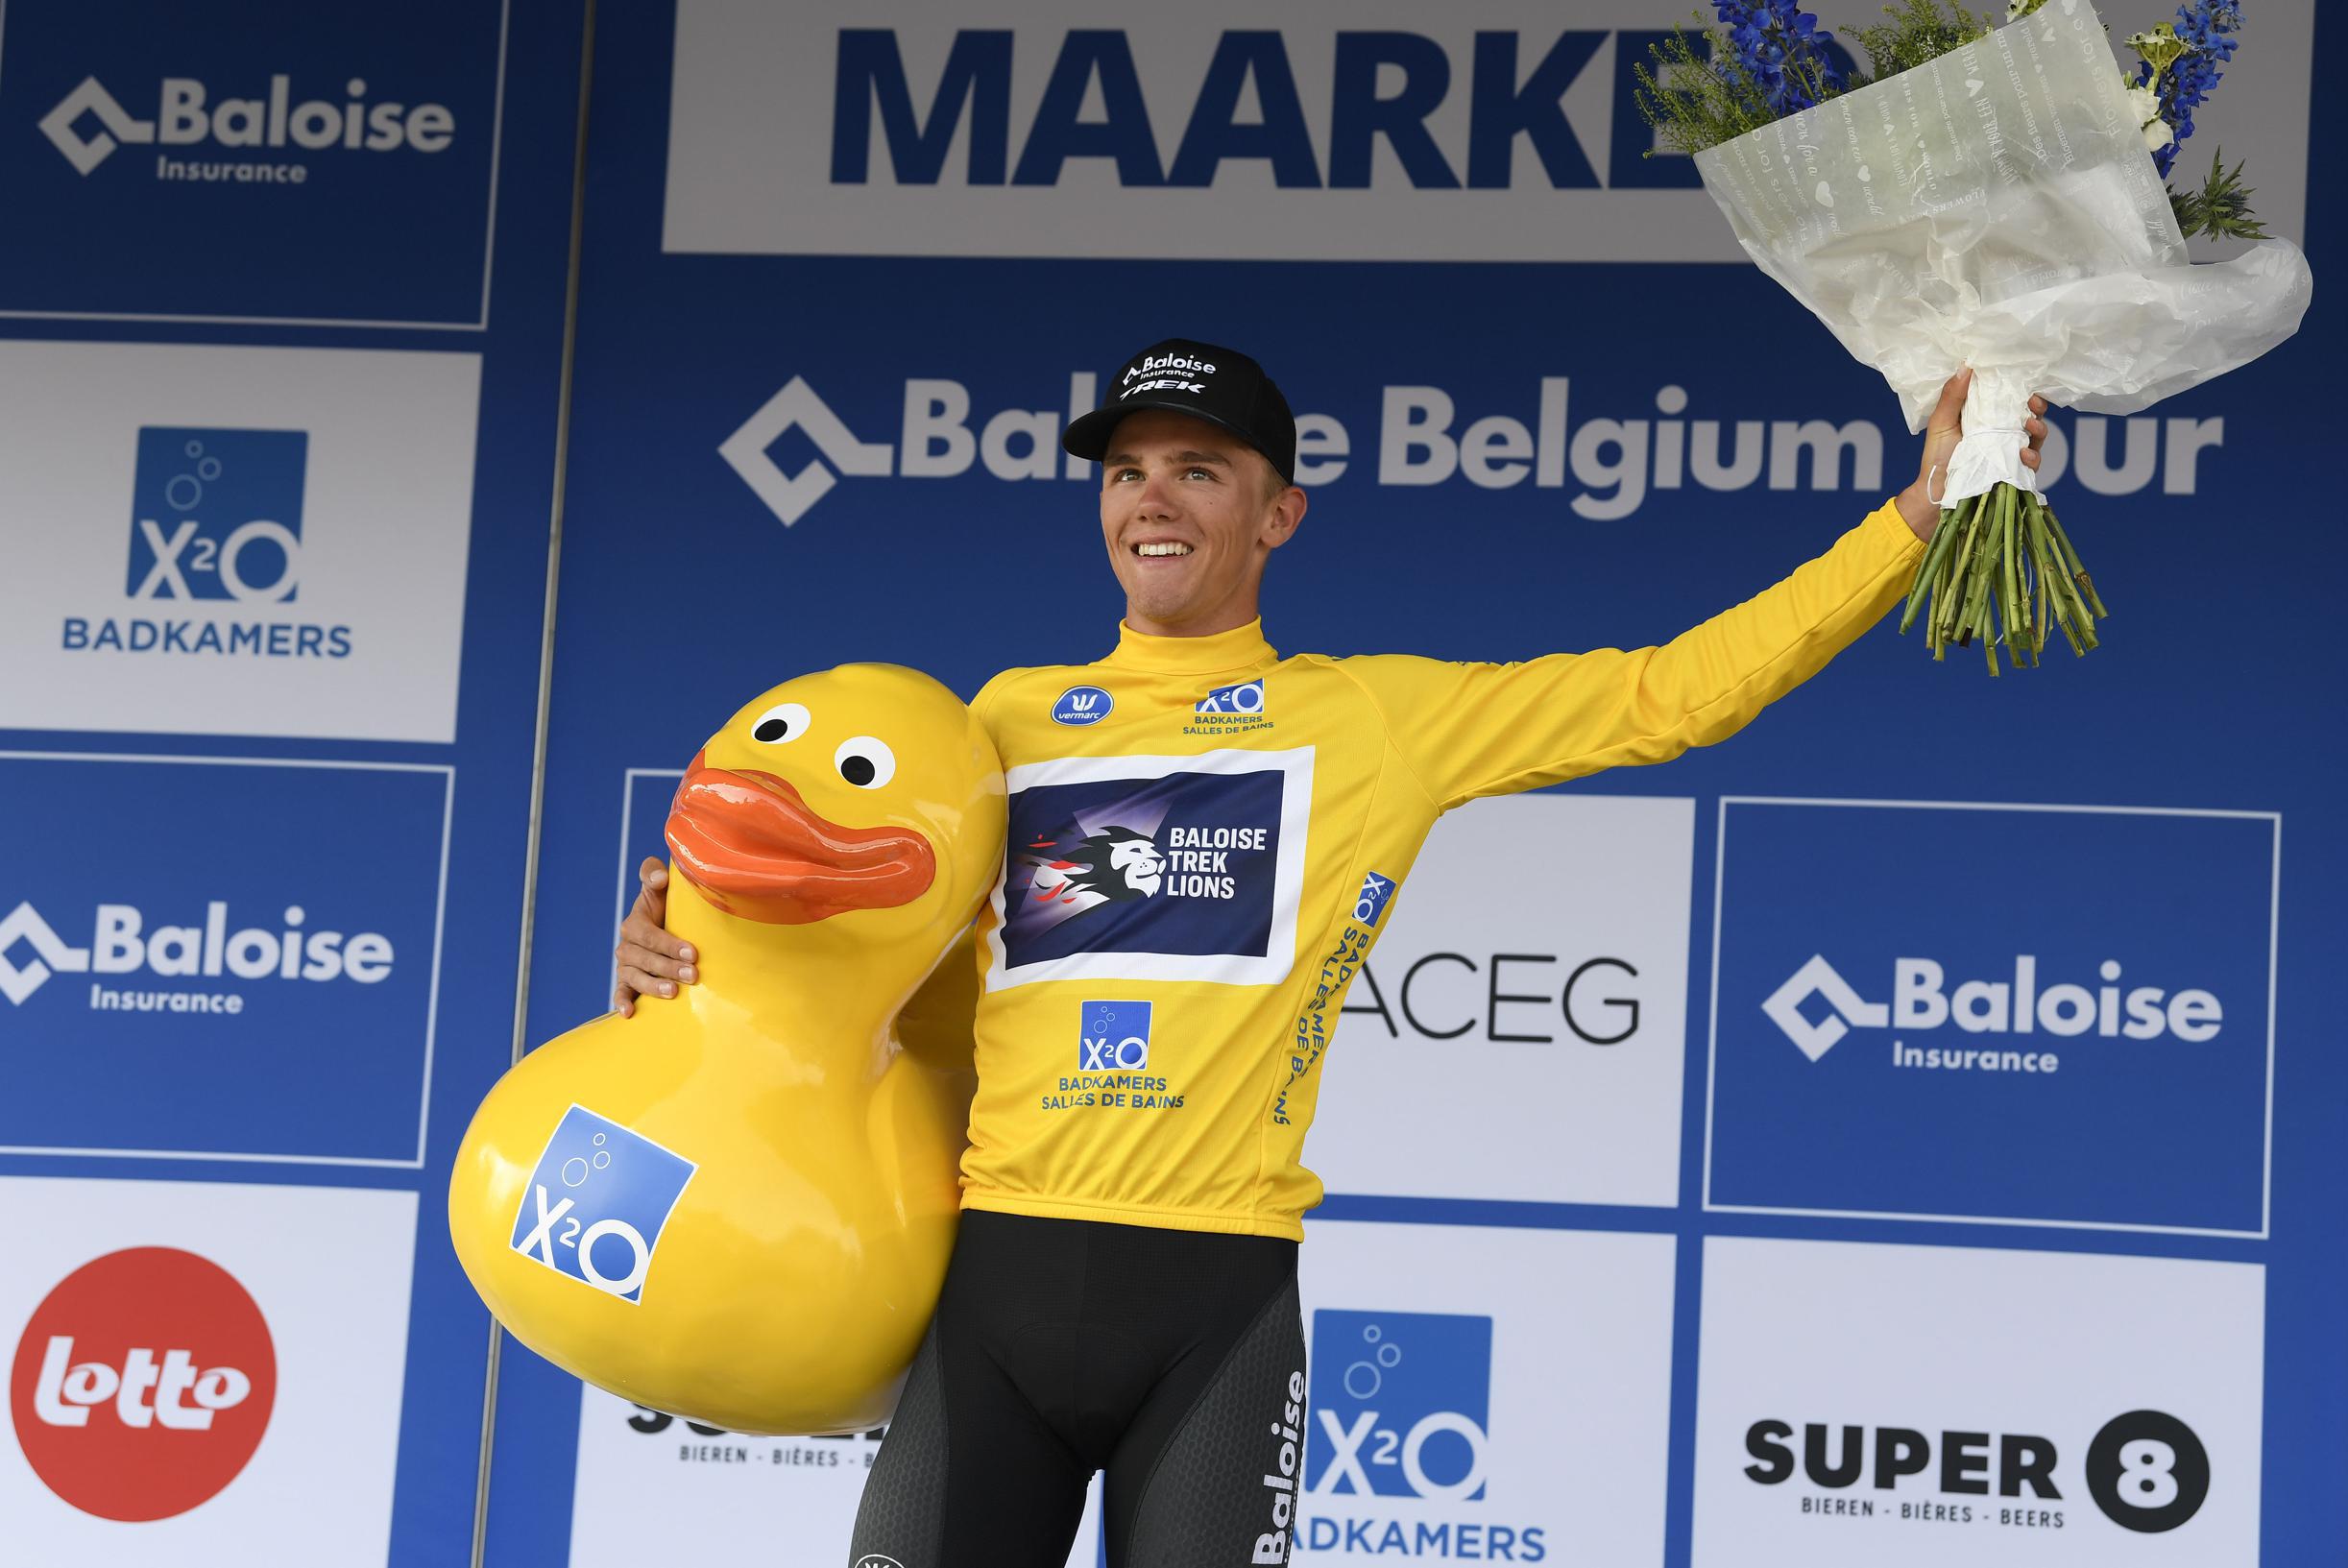 Тибо Найс сияет в желтой майке на Туре Балуа в Бельгии, но «умер десять раз» на первом этапе: «Горло полностью закрыто»